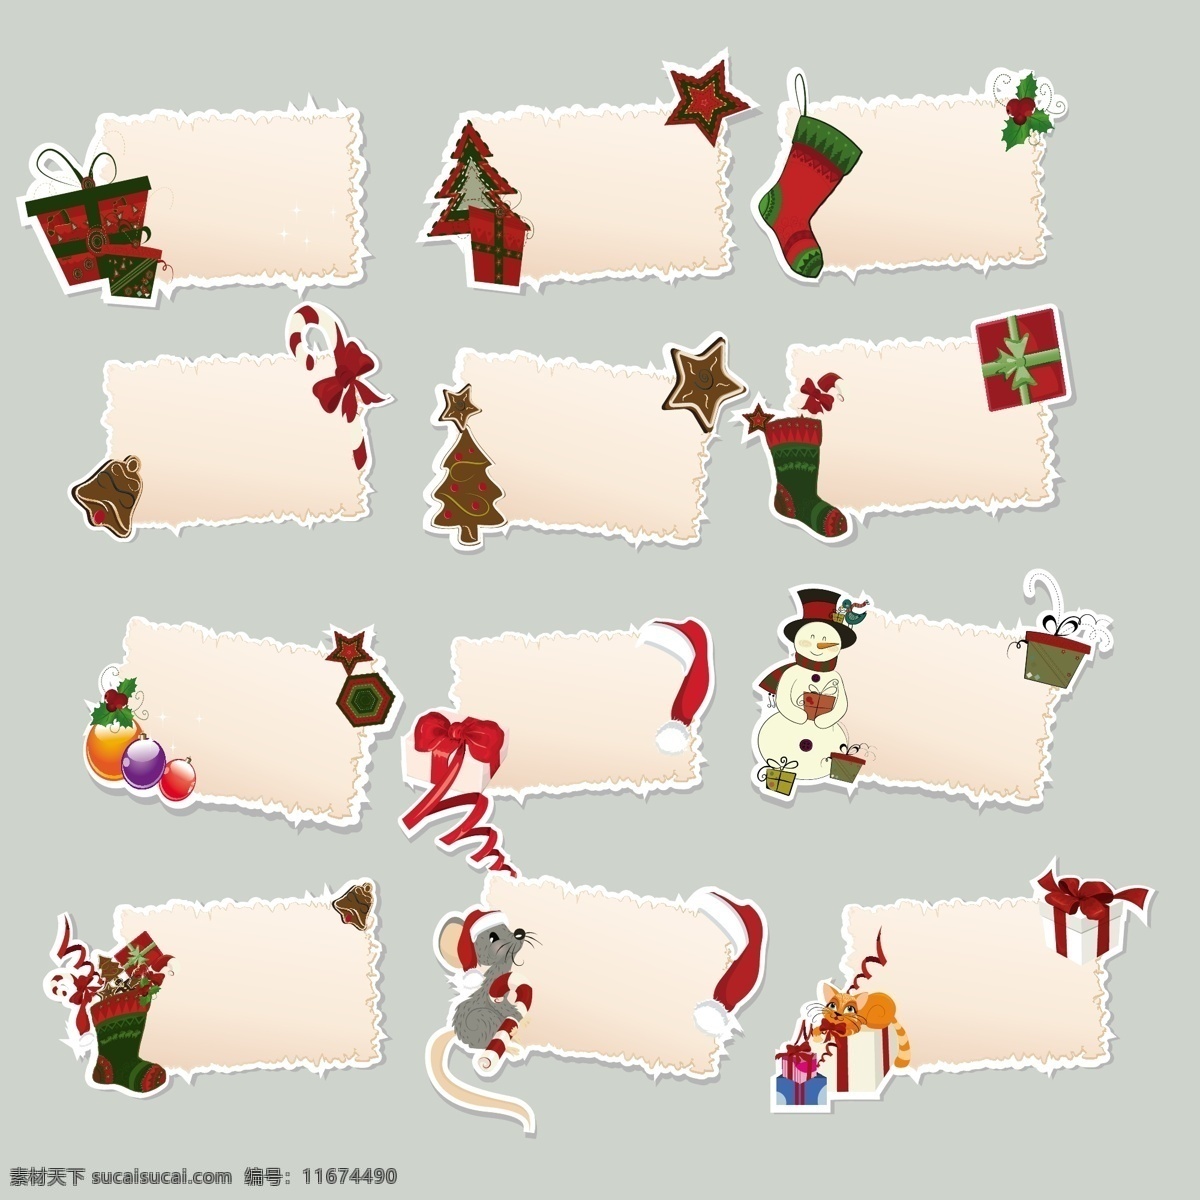 圣诞 标签 贴纸 矢量 礼盒 圣诞树 星星 袜子 蝴蝶结 圣诞球 丝带 可爱 别致 背景 圣诞主题 圣诞节 节日素材